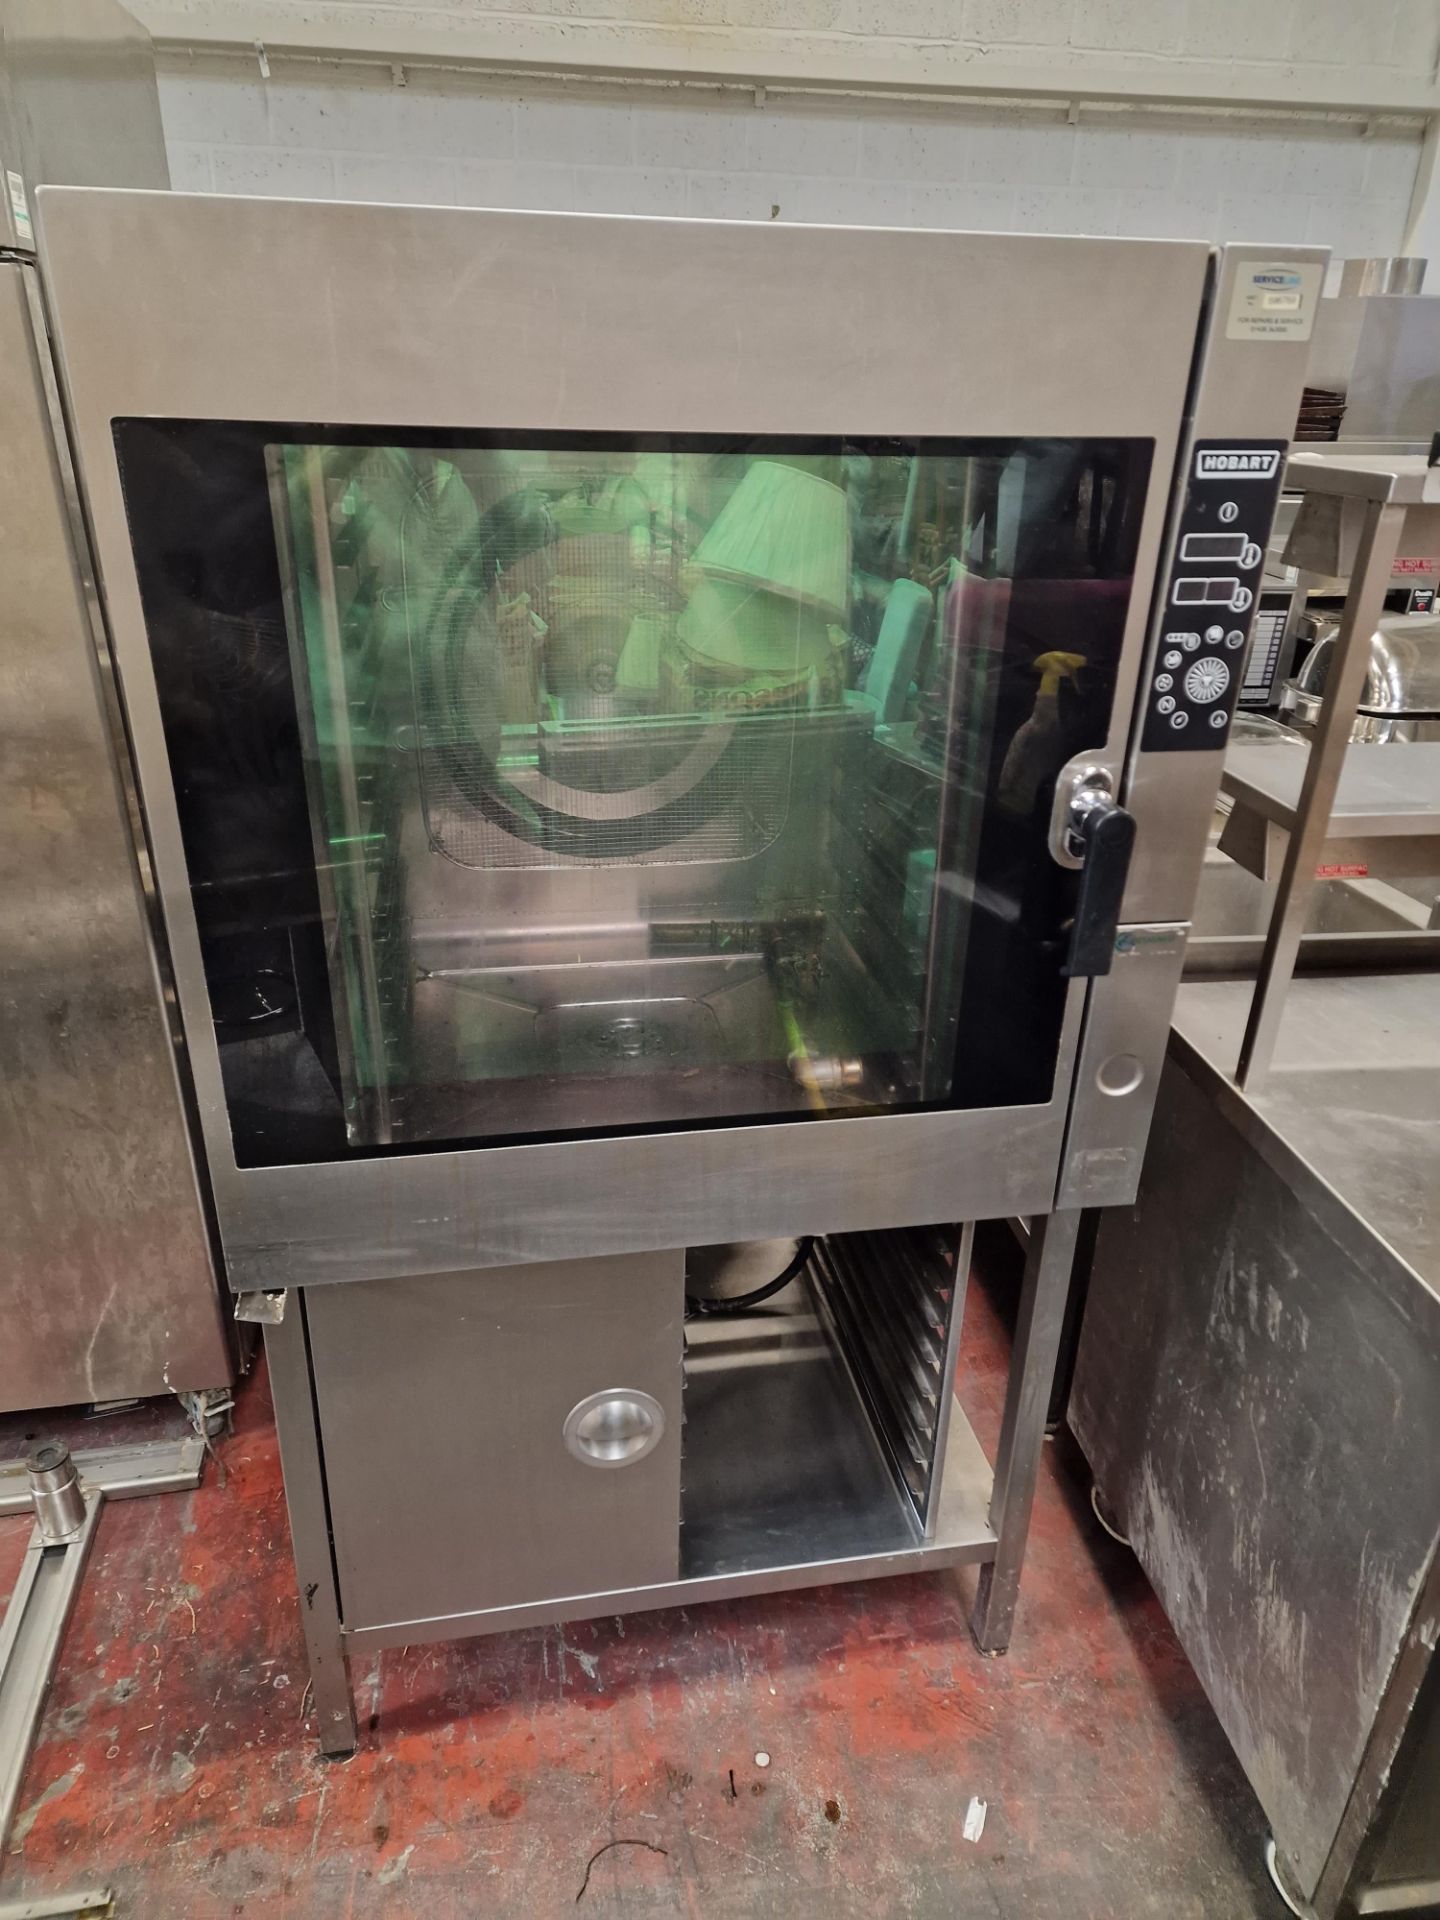 Hobart model CPLUS-101G-LA-KK 10 grid combi oven on stainless steel stand 3 phase sn K.81.853.716